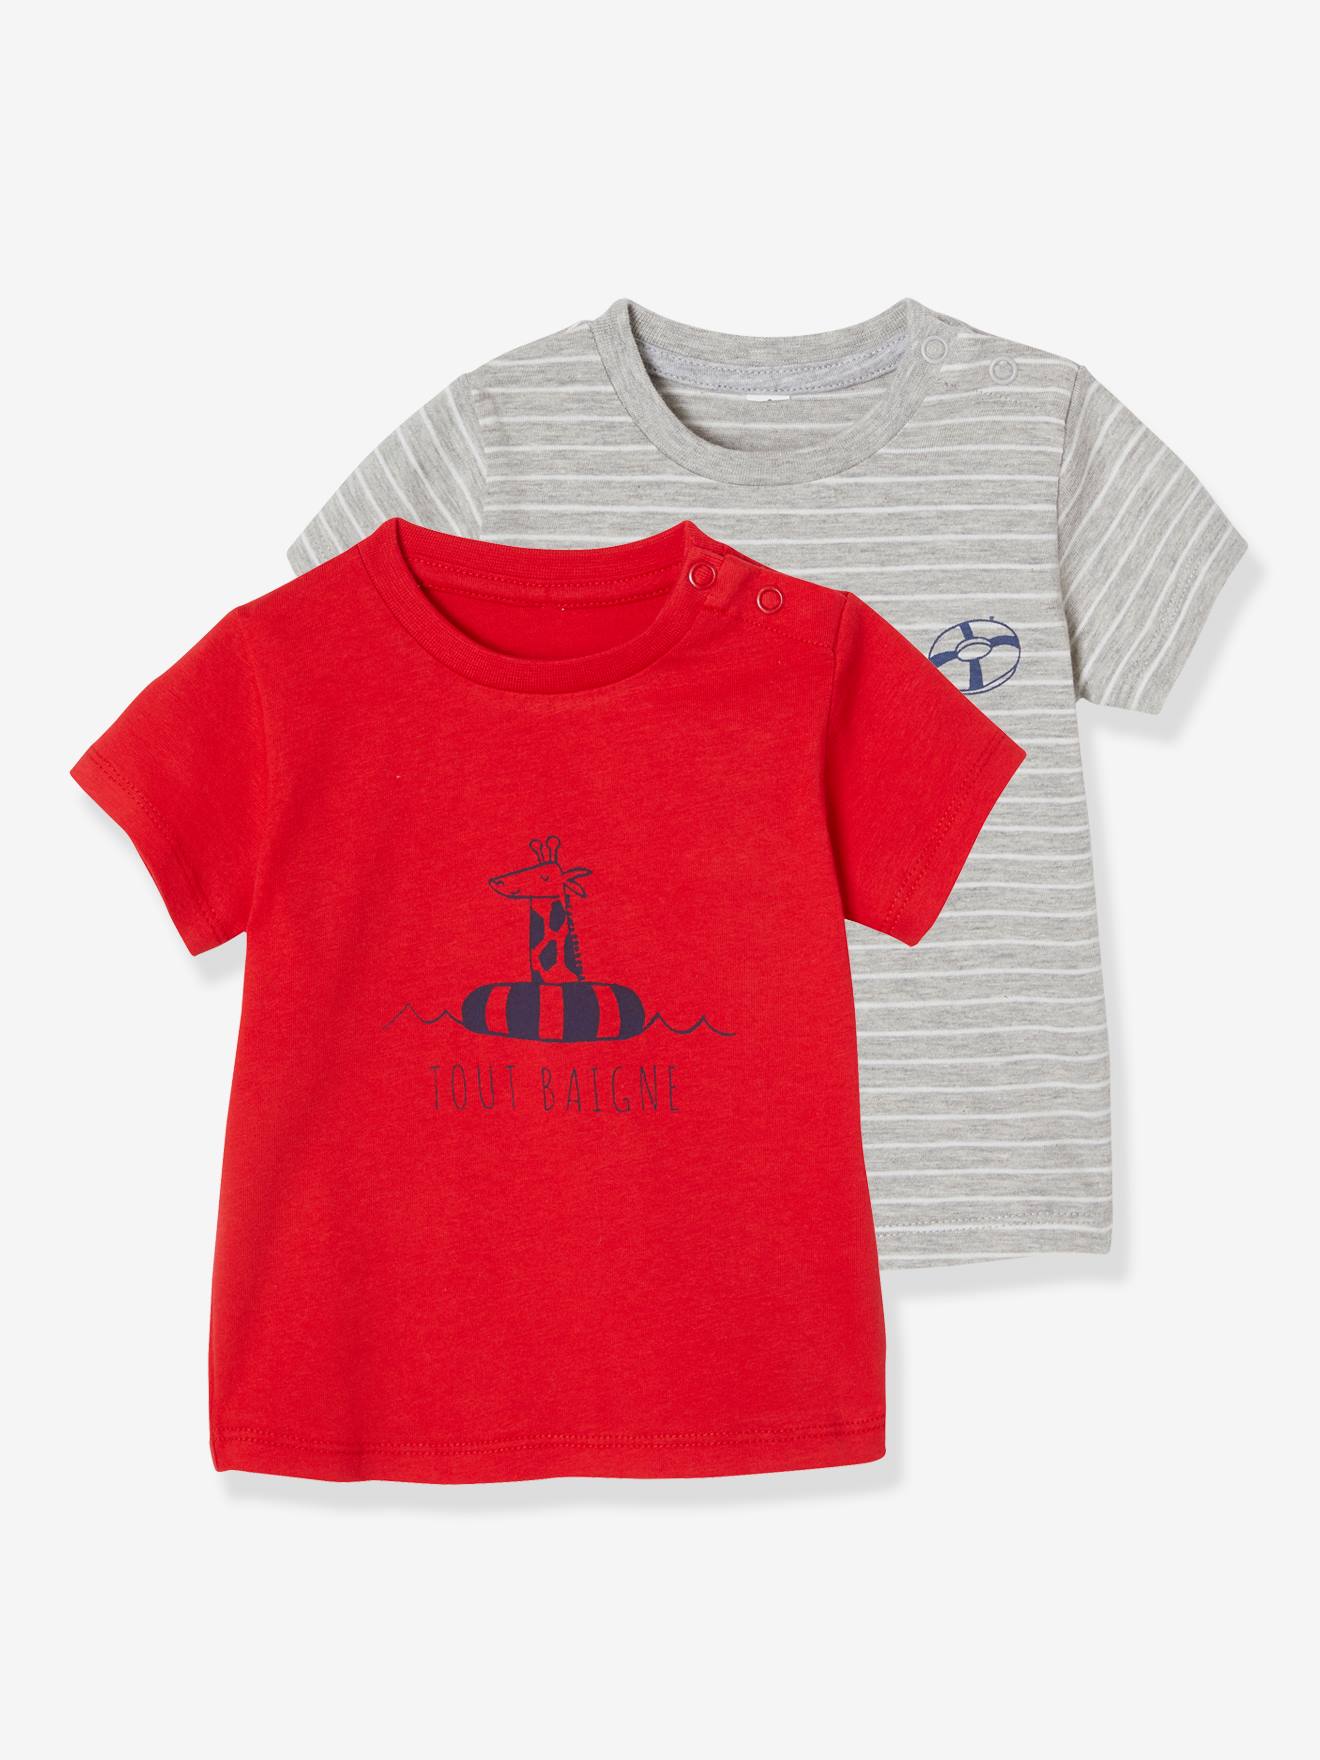 Lot de 2 T-shirts bébé garçon motifs animaux rigolos lot rouge